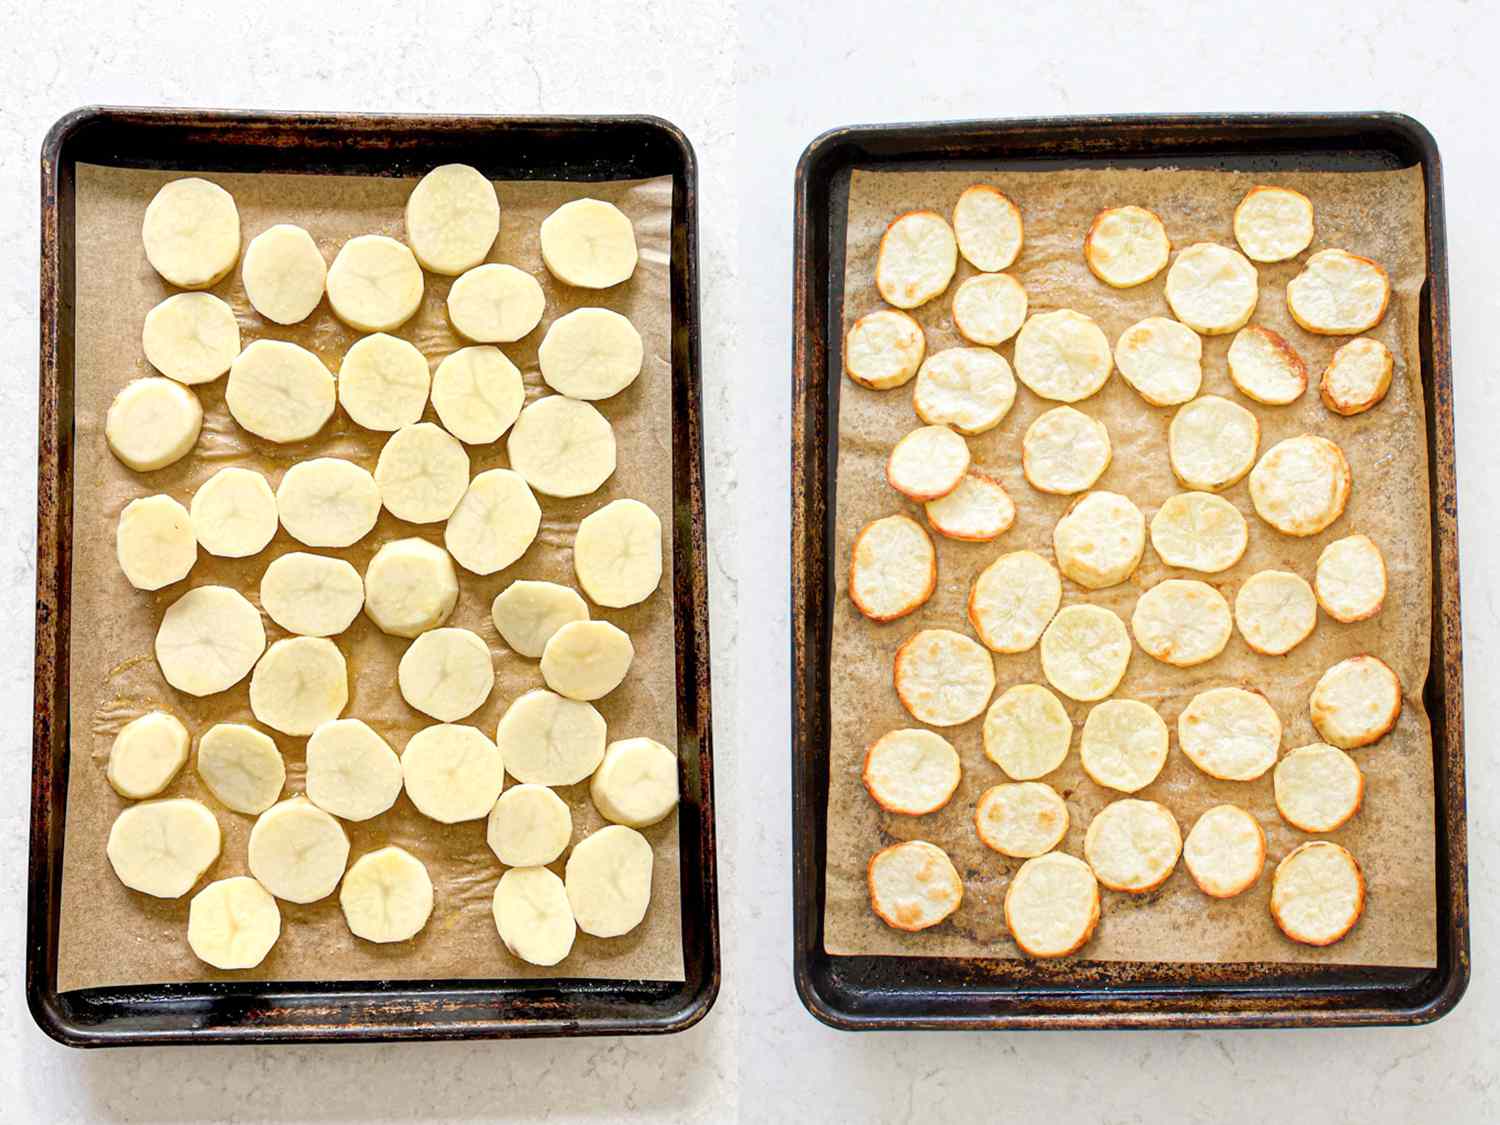 二图像拼贴。左图:未煮熟的土豆片放在烤盘上。右图:烤土豆片放在烤盘上